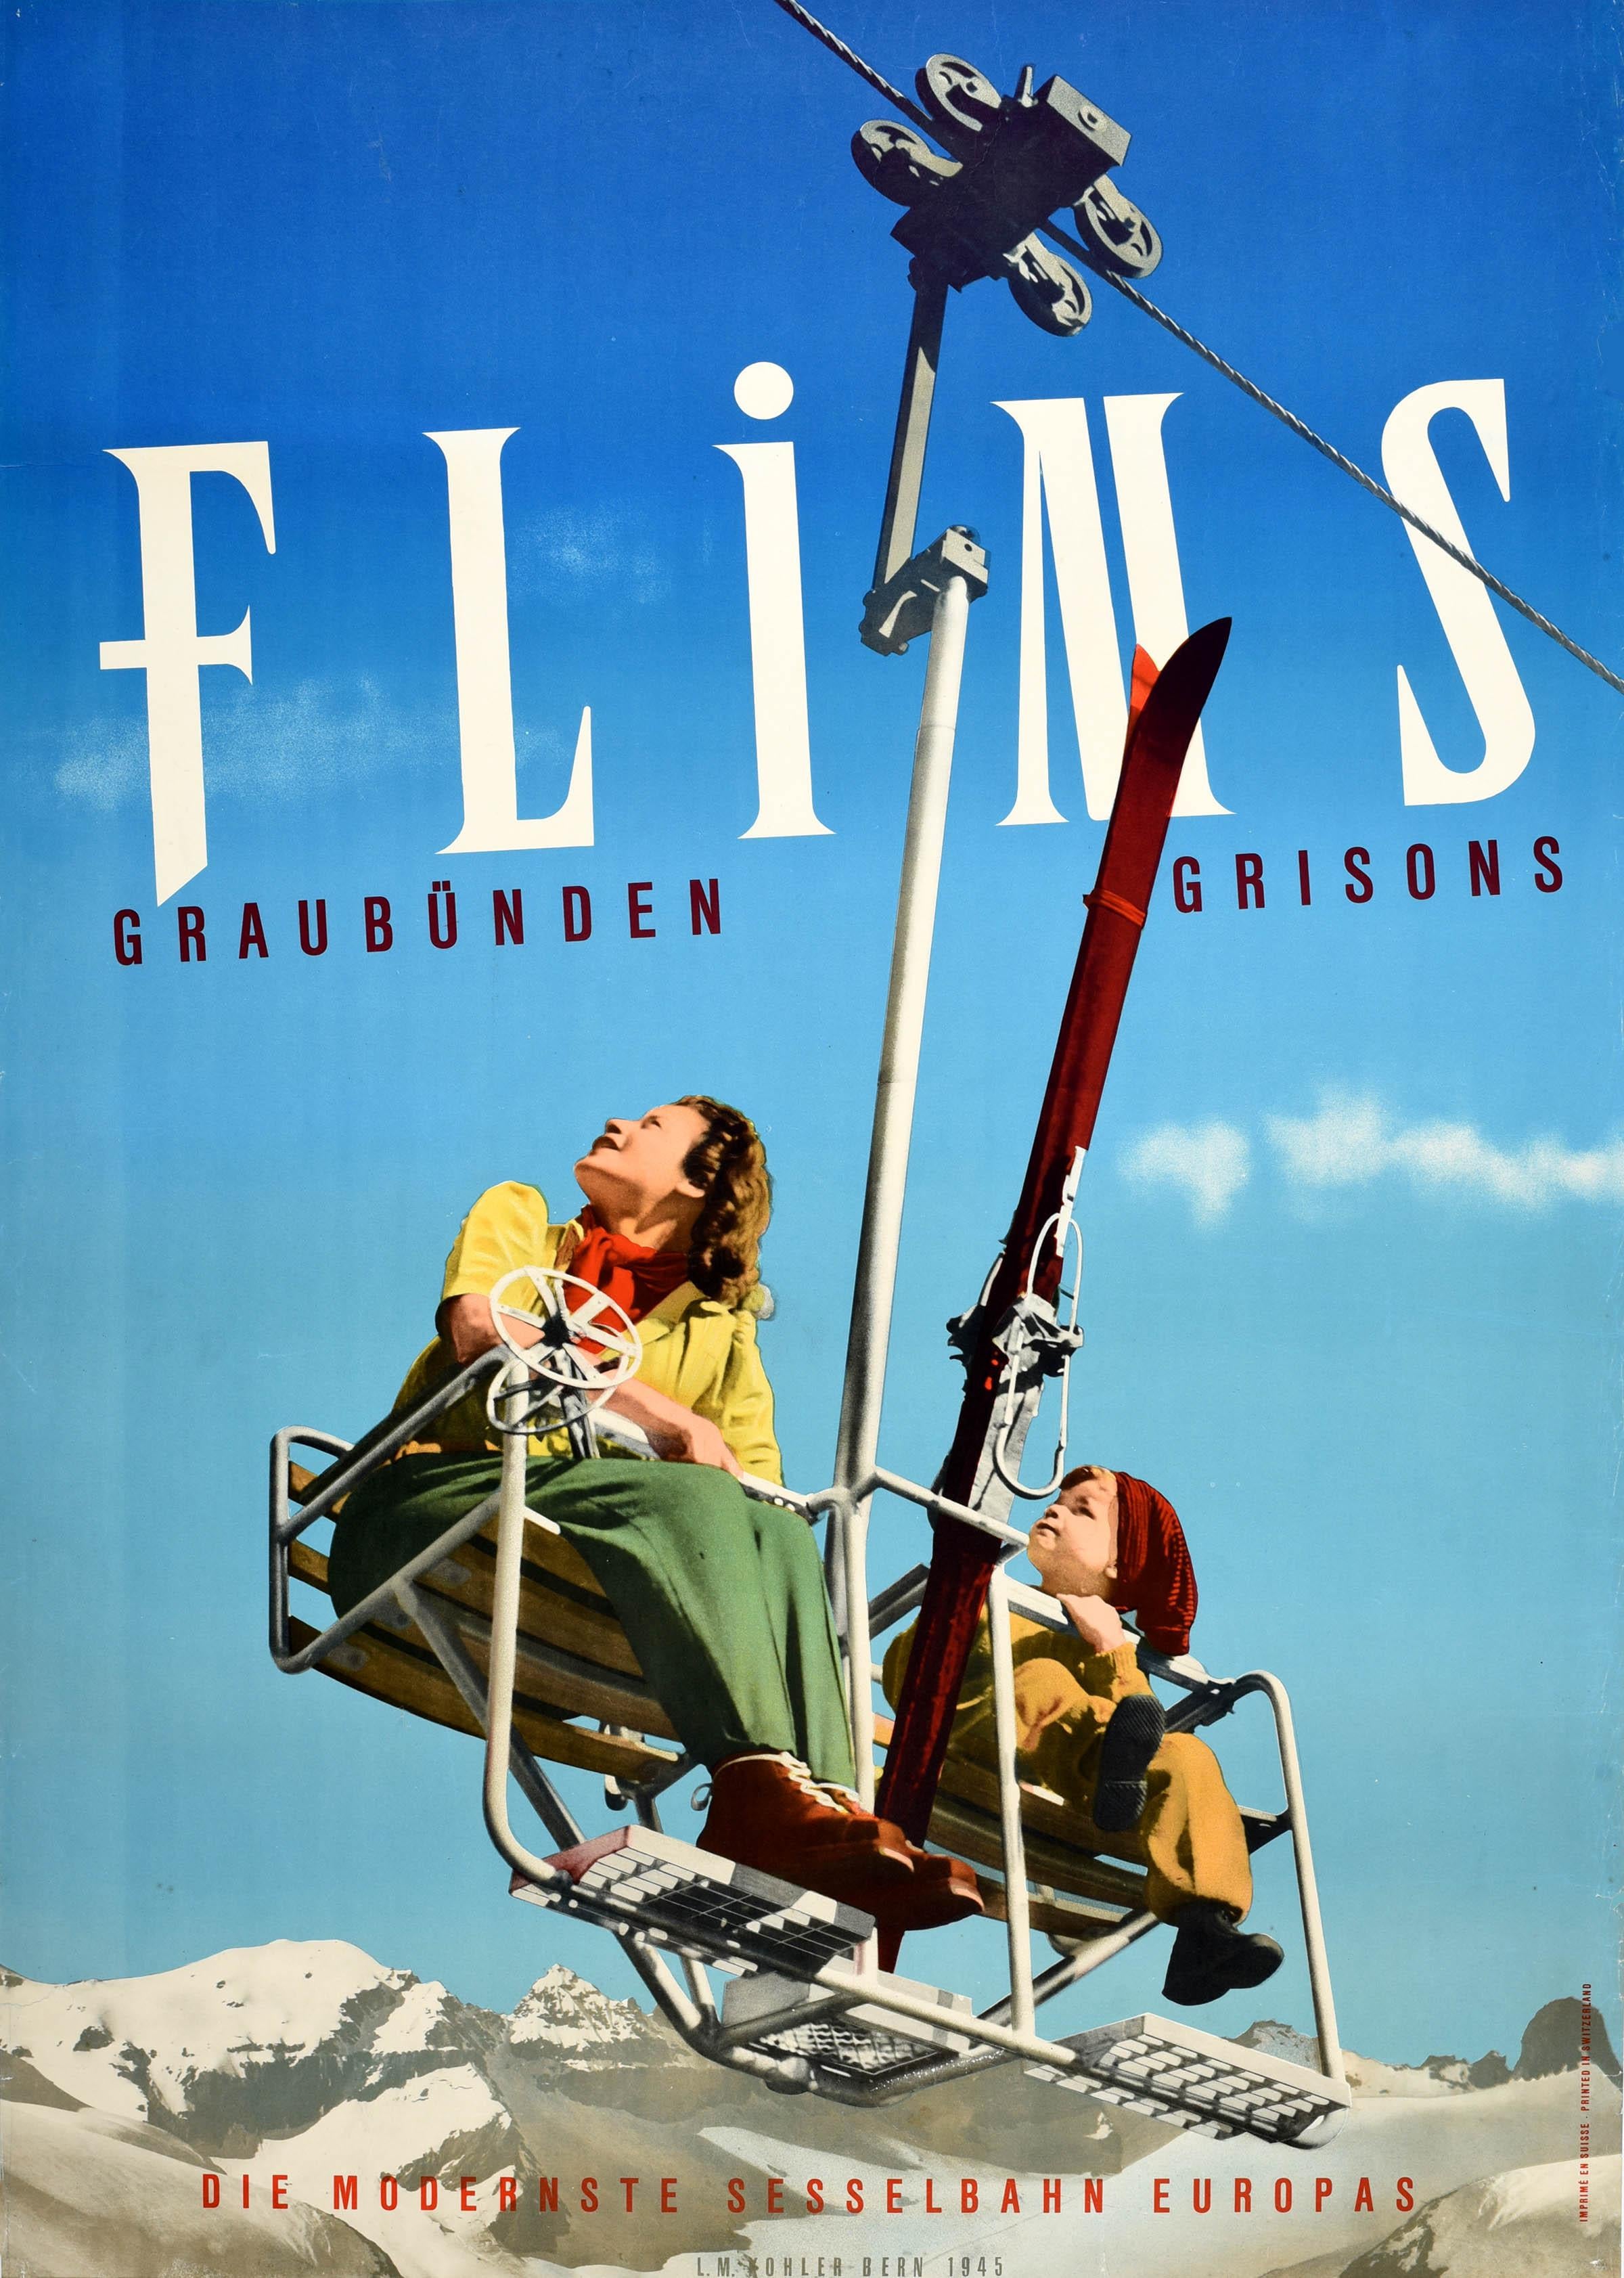 Unknown Print - Original Vintage Winter Travel Ski Poster Flims Graubunden Grisons Switzerland